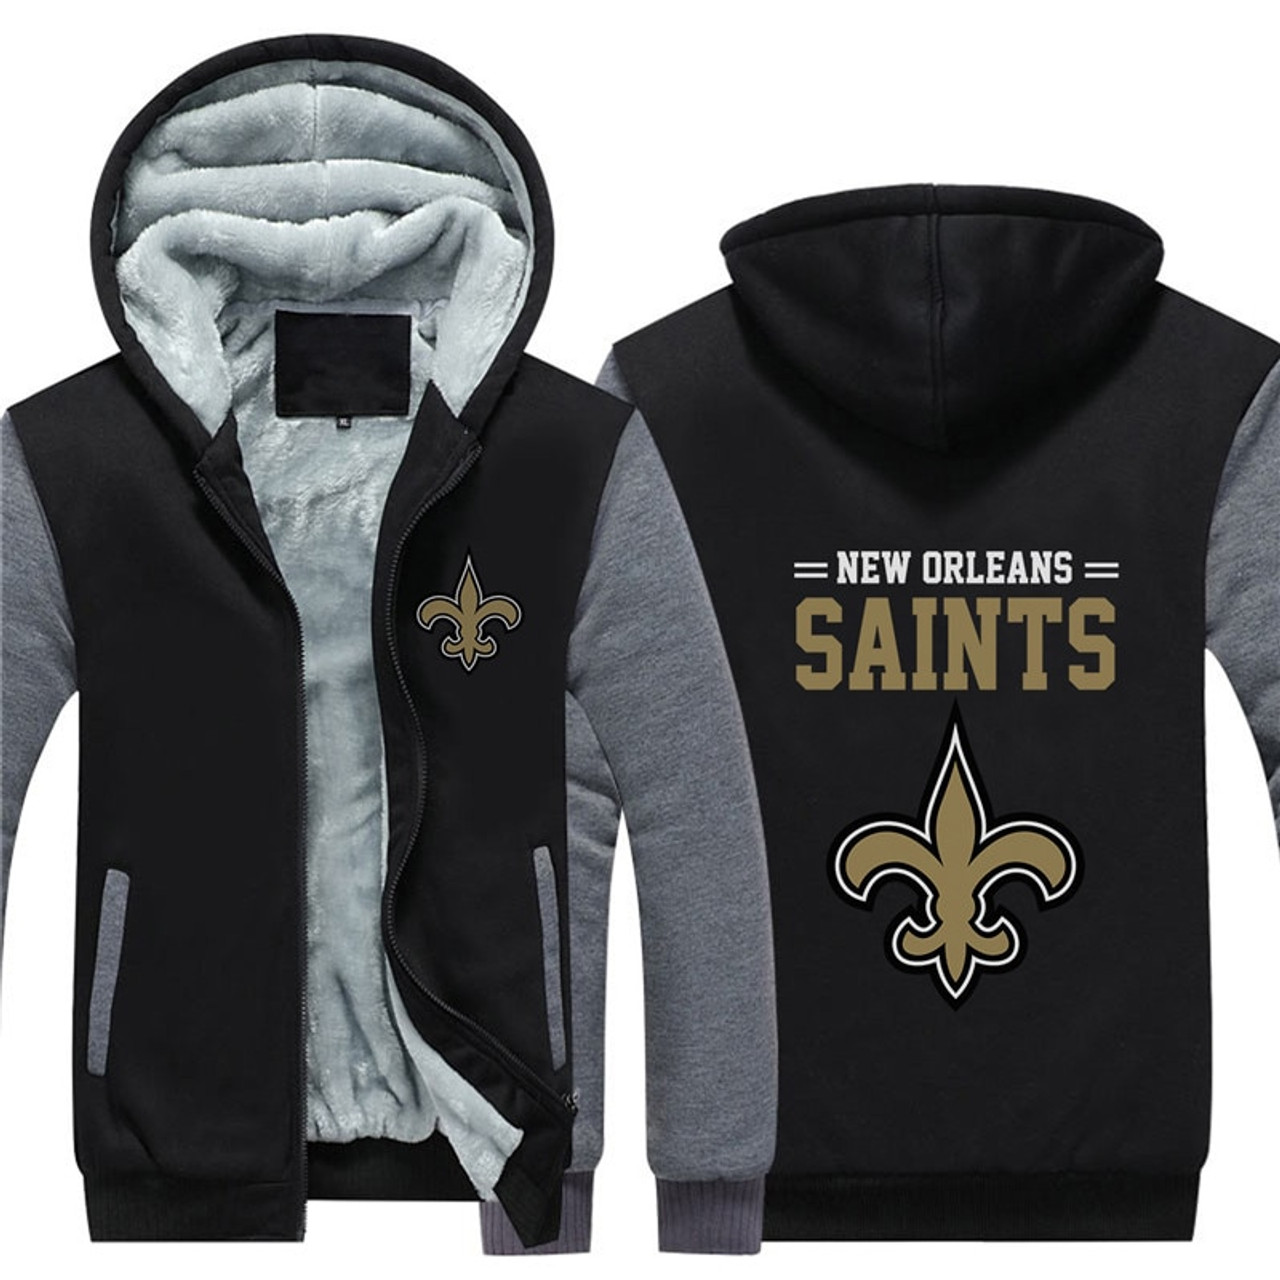 nfl saints jacket